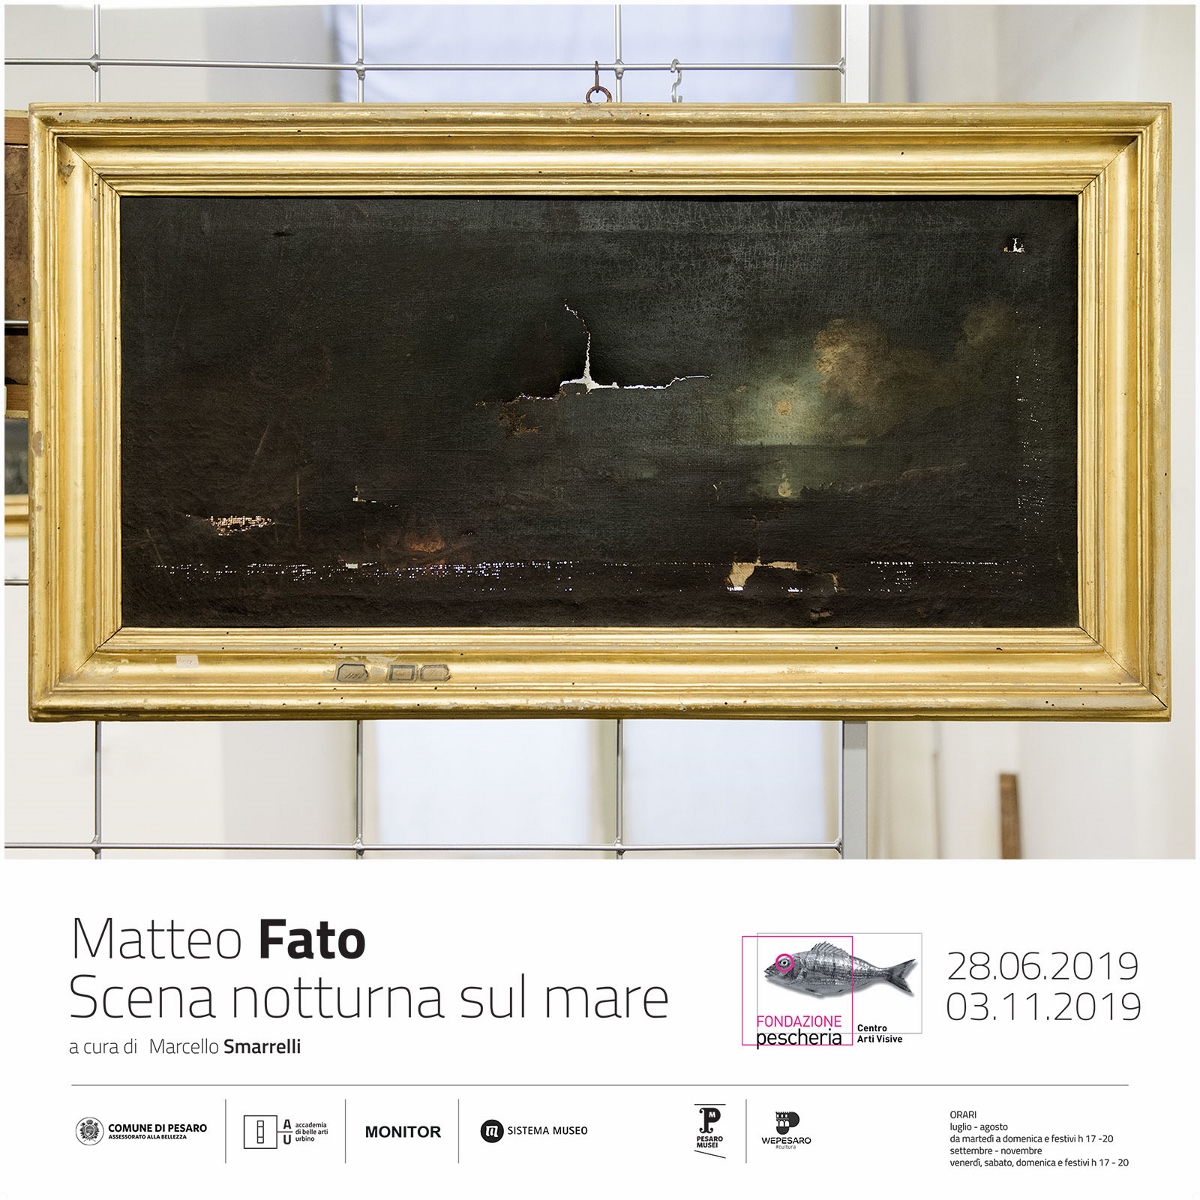 Matteo Fato – Scena notturna sul mare